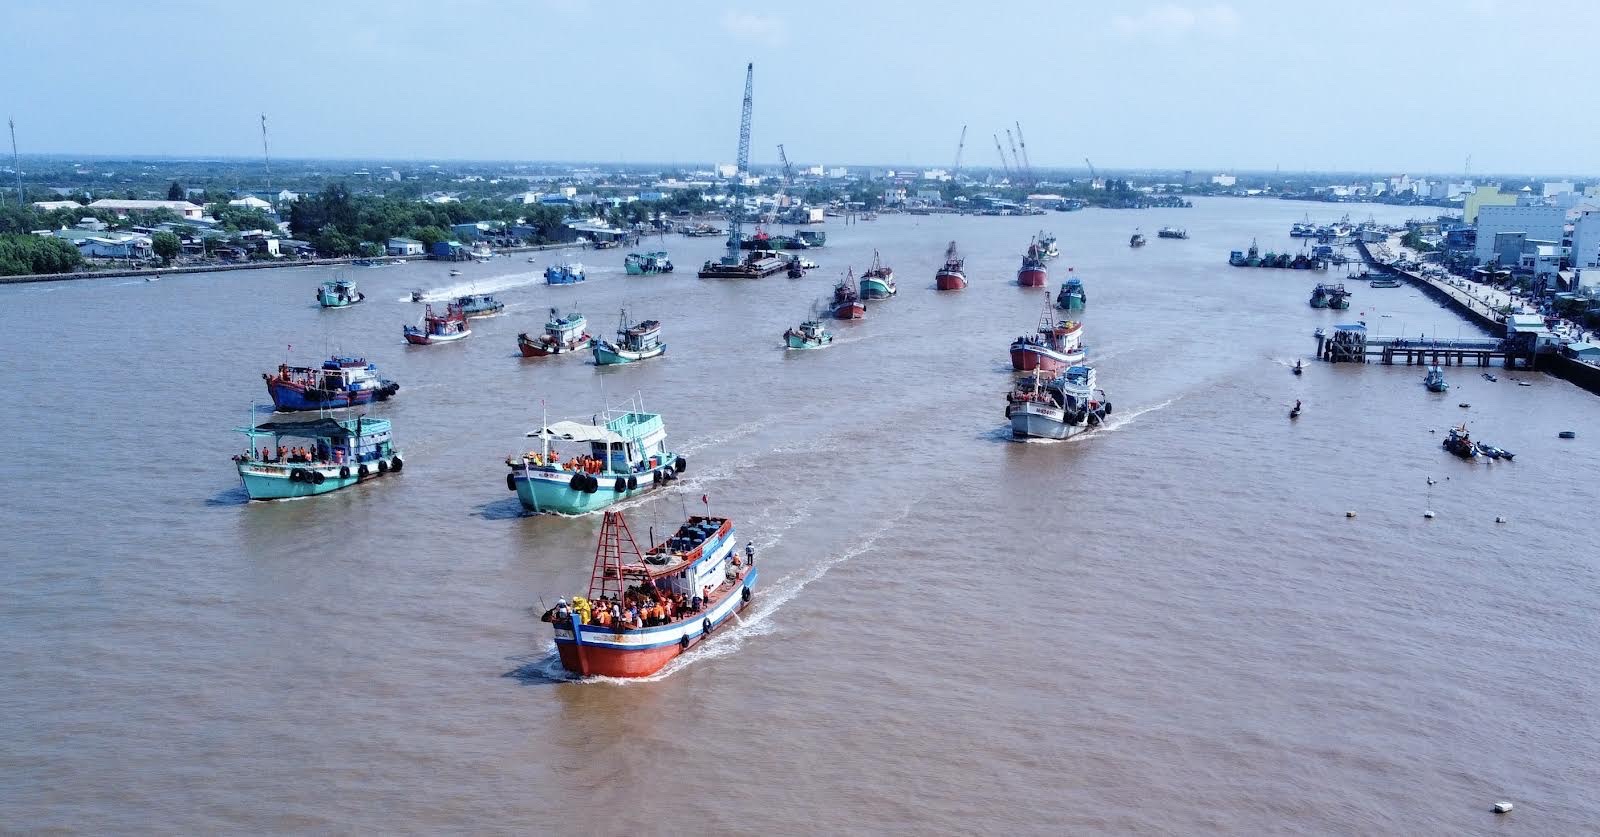 Lễ hội Nghinh Ông là một trong những lễ hội đặc sắc của Việt Nam, được tổ chức hàng năm tại các địa phương ven biển. Năm 2024, lễ hội Nghinh Ông sẽ được nâng cấp và tổ chức rộng rãi hơn nữa, đặc biệt là ở các địa phương nghèo khó nhằm quảng bá văn hóa và du lịch.